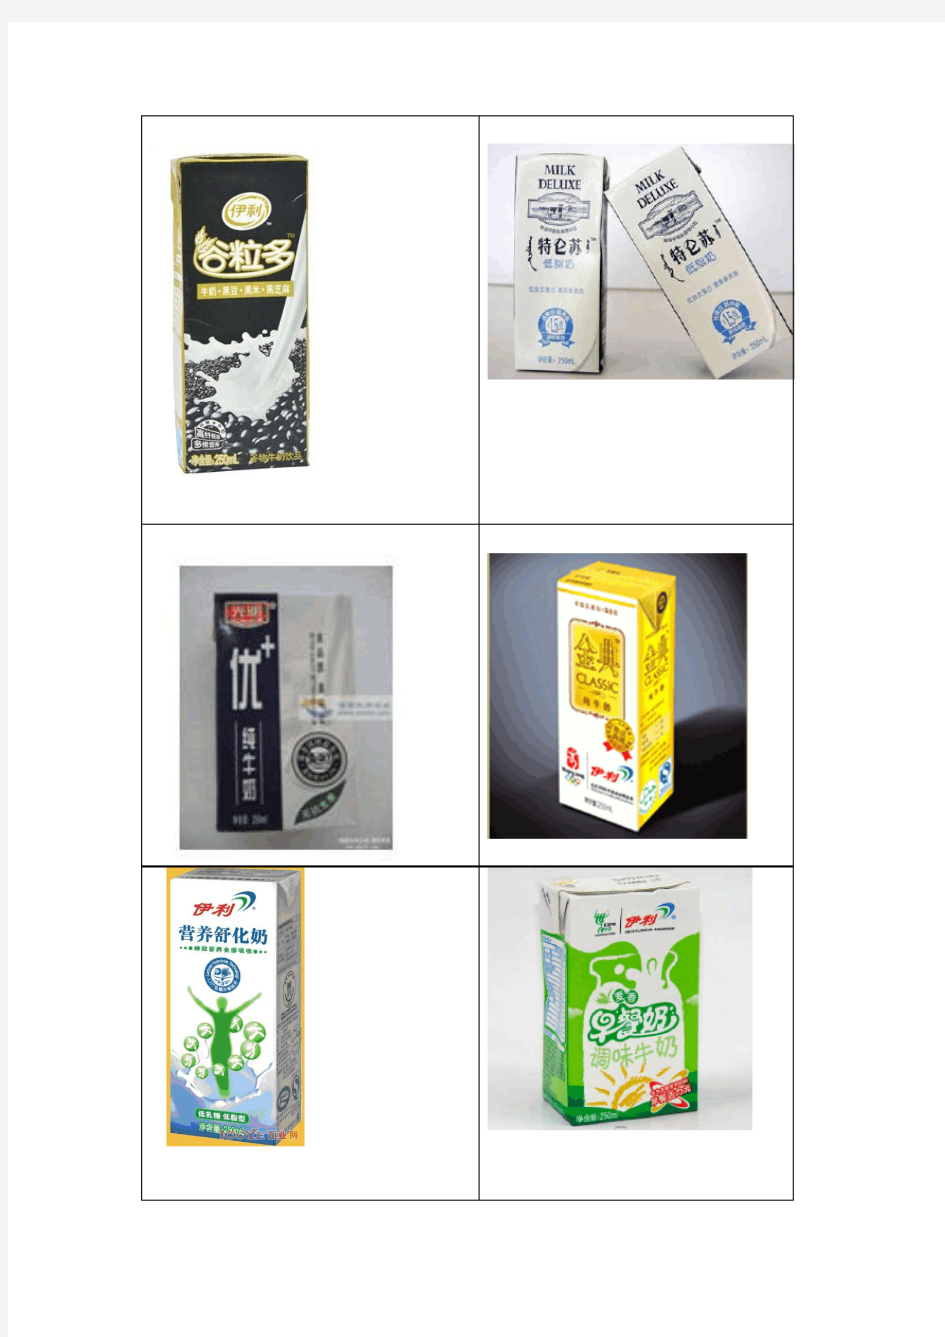 伊利乳业纯牛奶工艺流程图及伊利纸包装牛奶市场调查分析